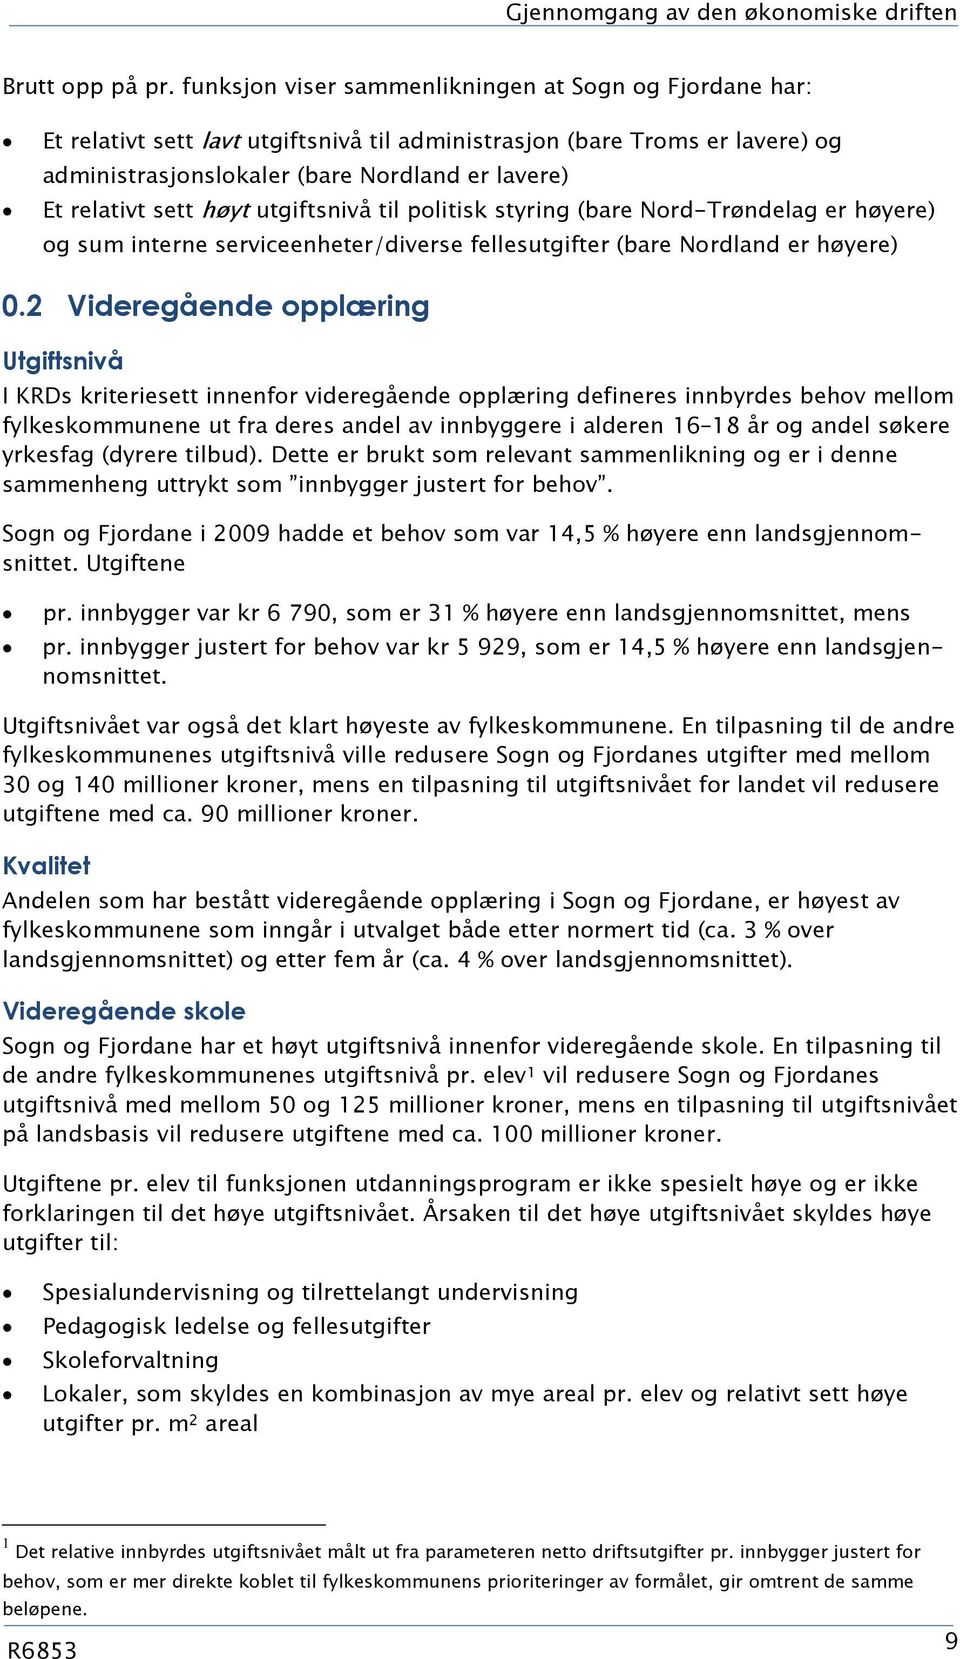 sett høyt utgiftsnivå til politisk styring (bare Nord-Trøndelag er høyere) og sum interne serviceenheter/diverse fellesutgifter (bare Nordland er høyere).